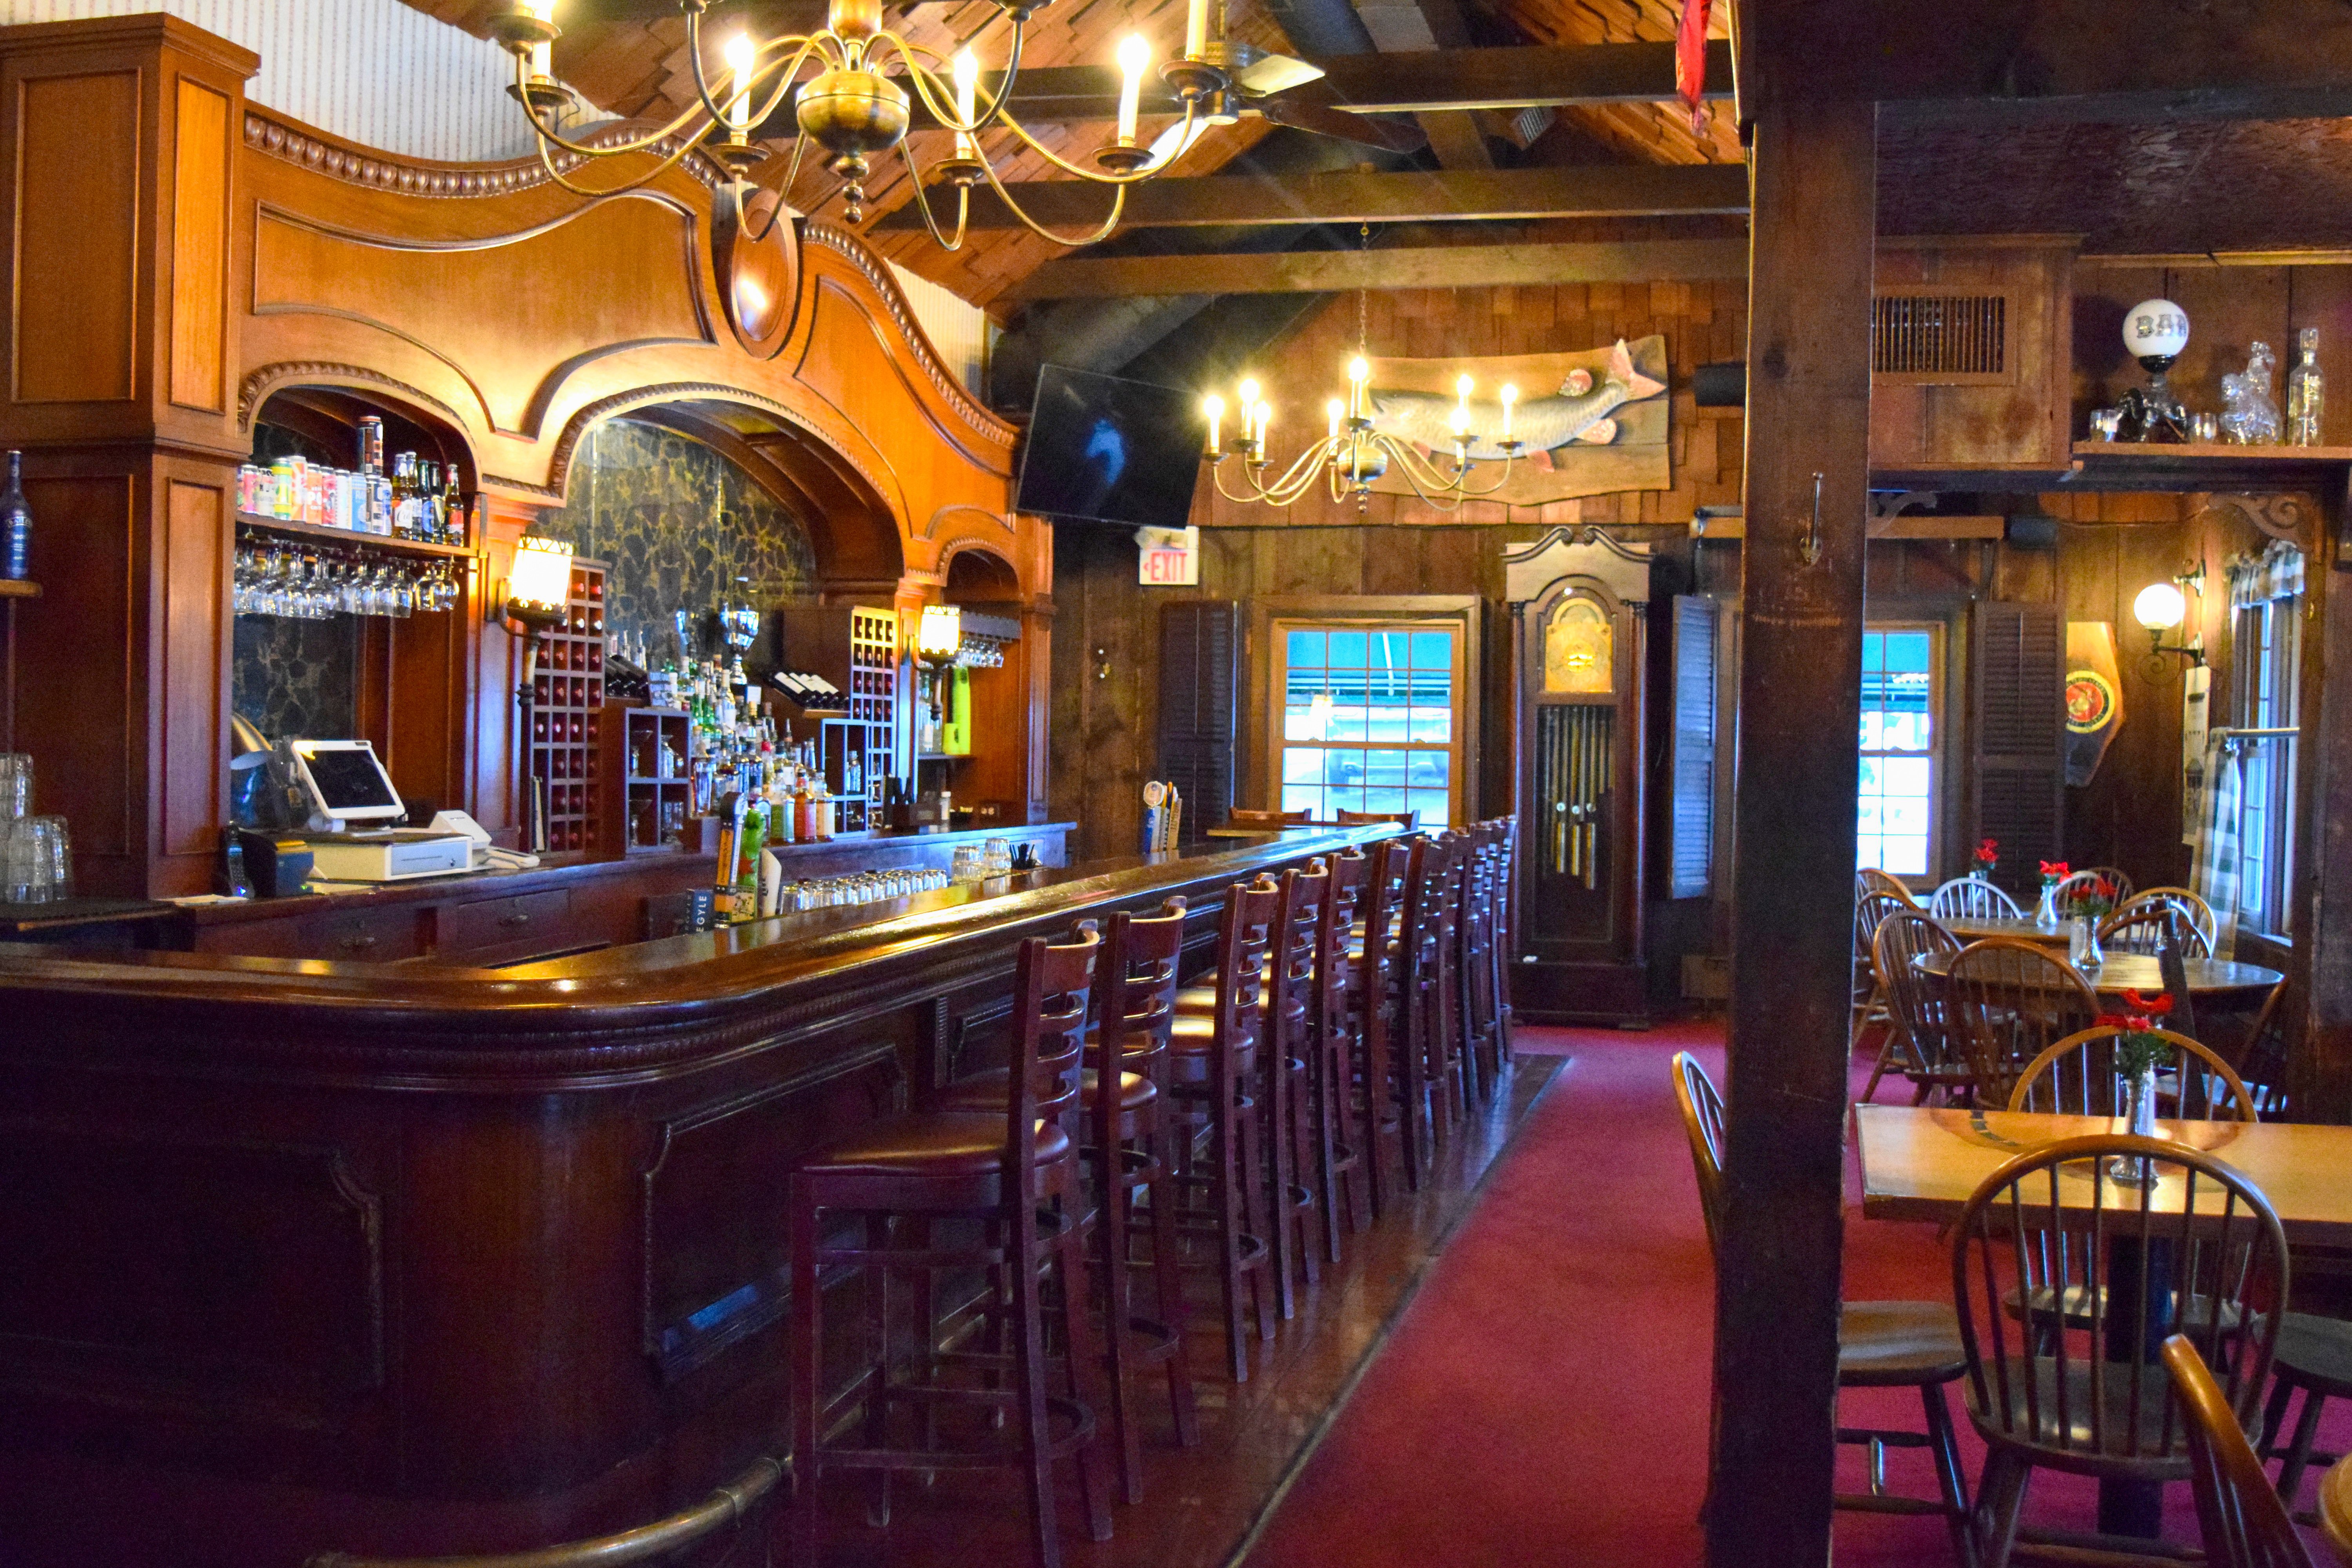 The mahogany bar at The Village Tavern.